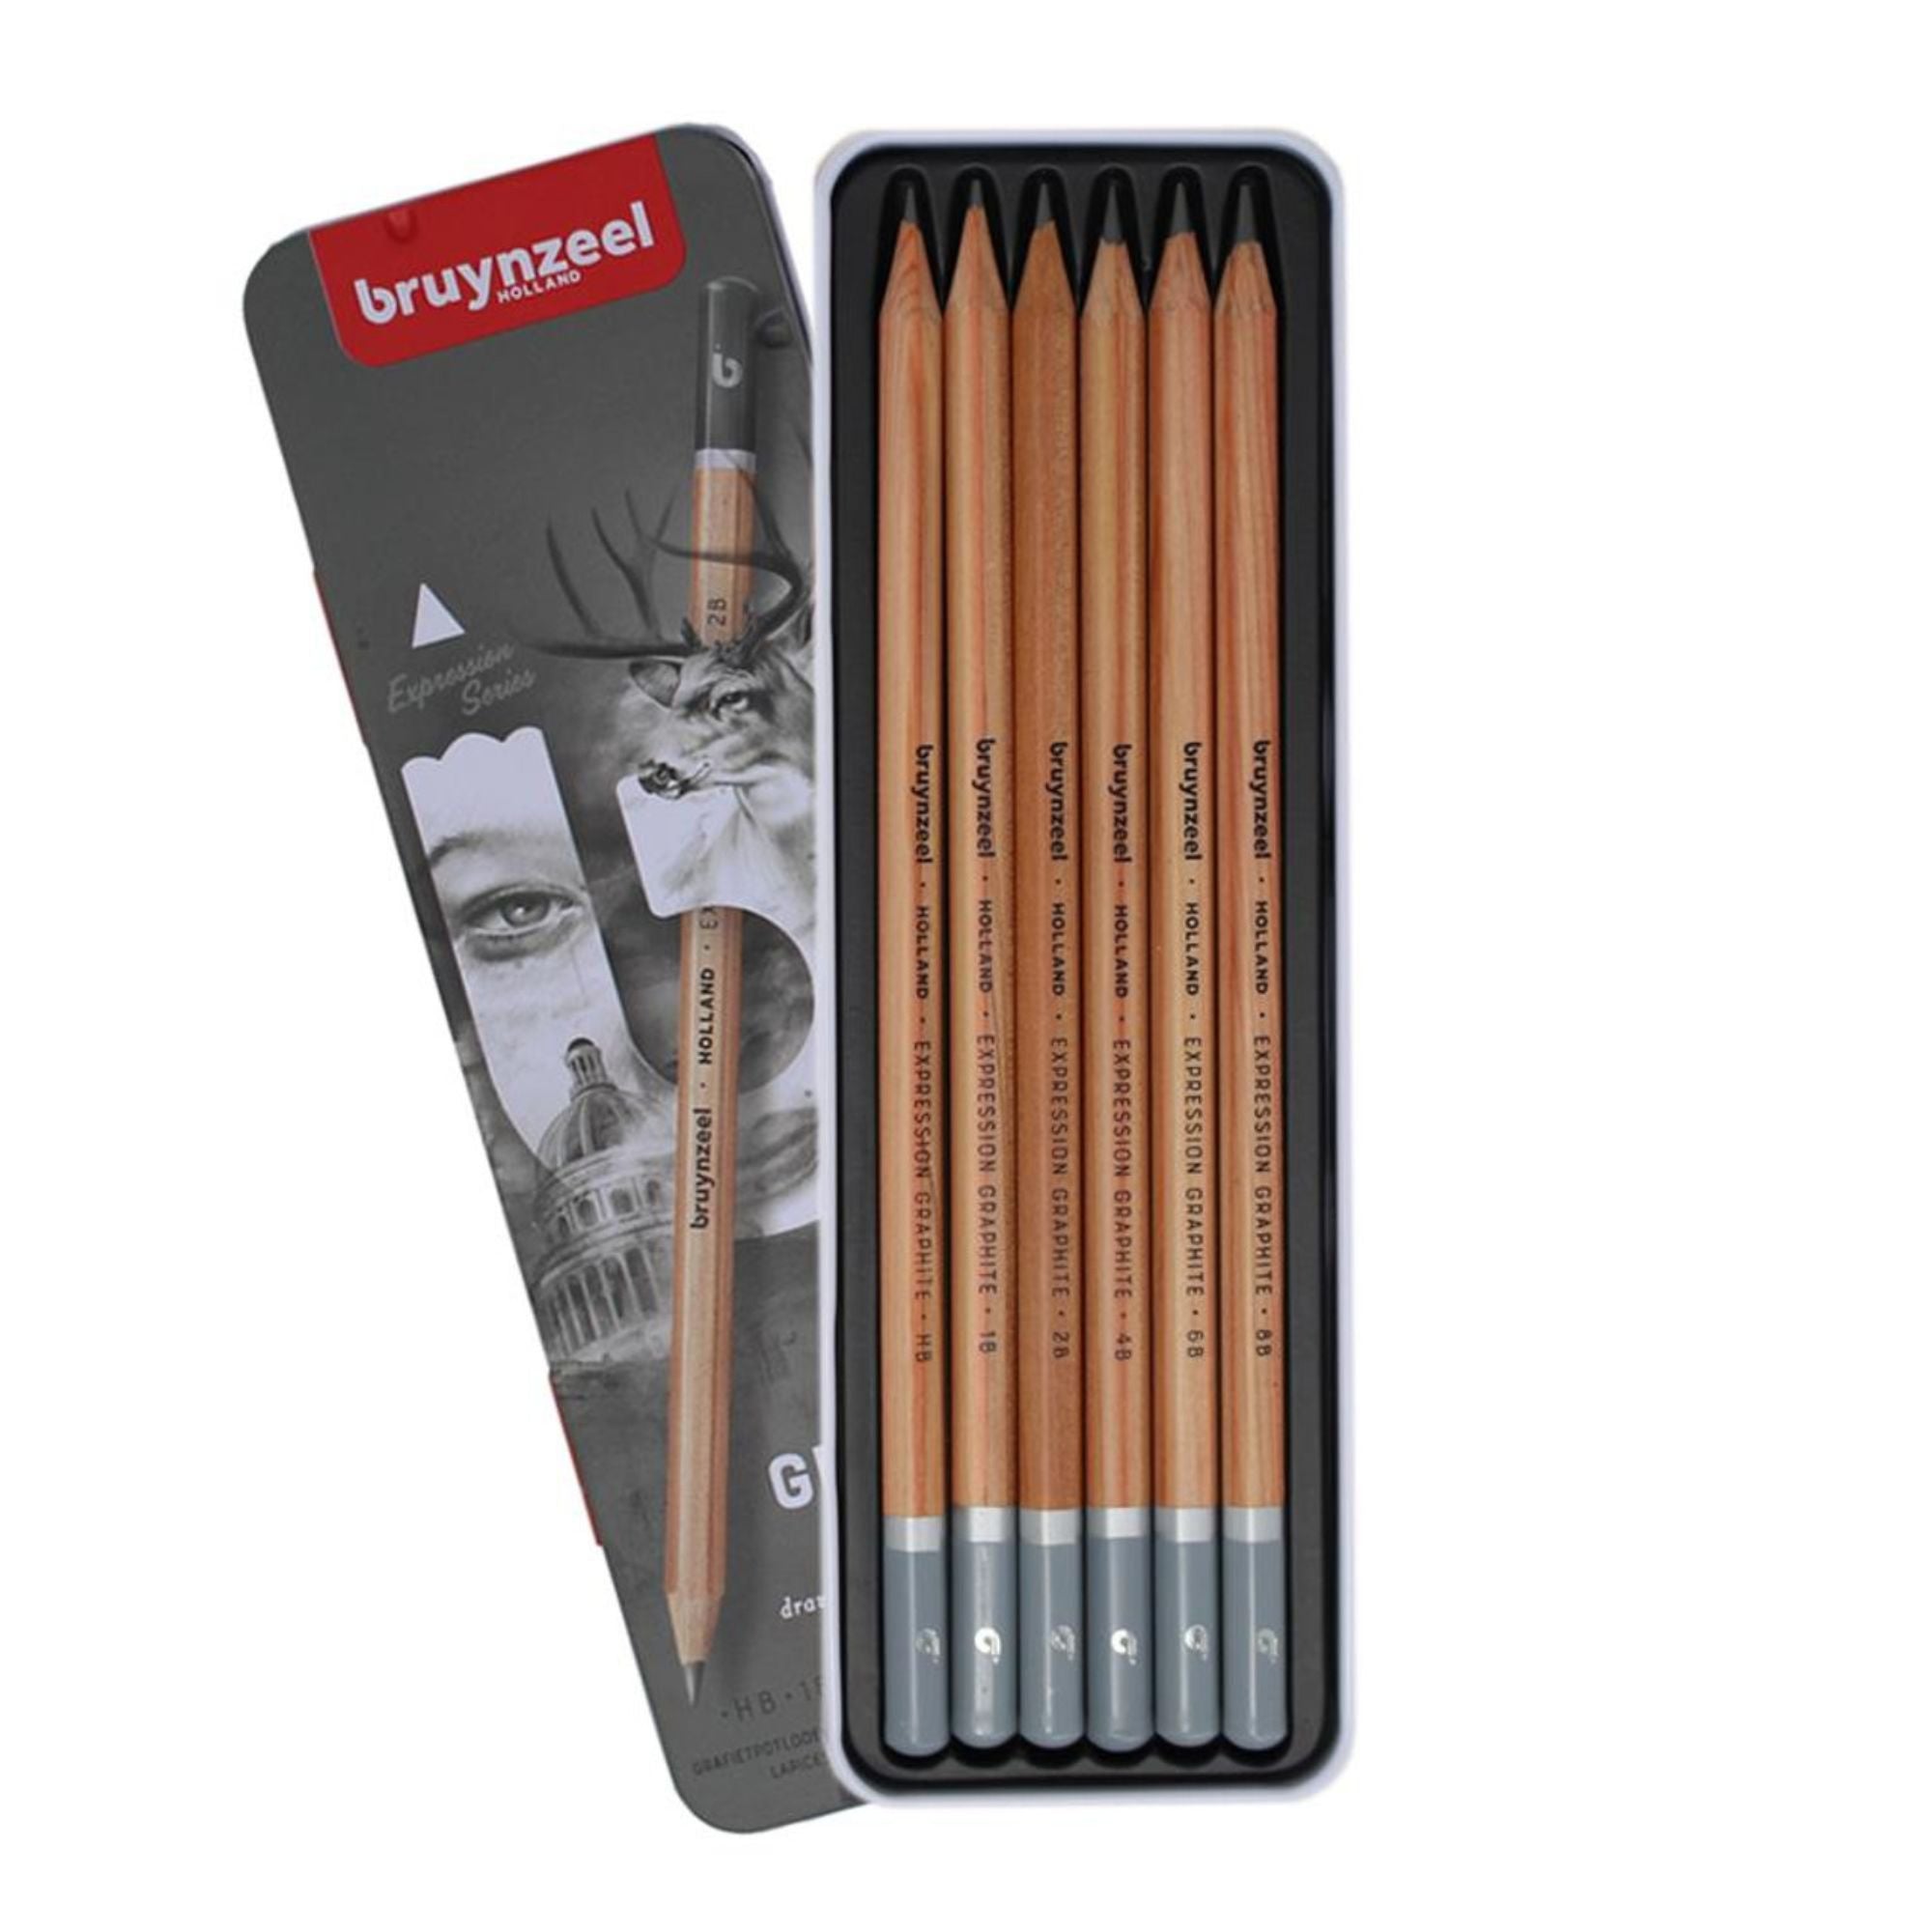 Bruynzeel Graphite Pencil Tins